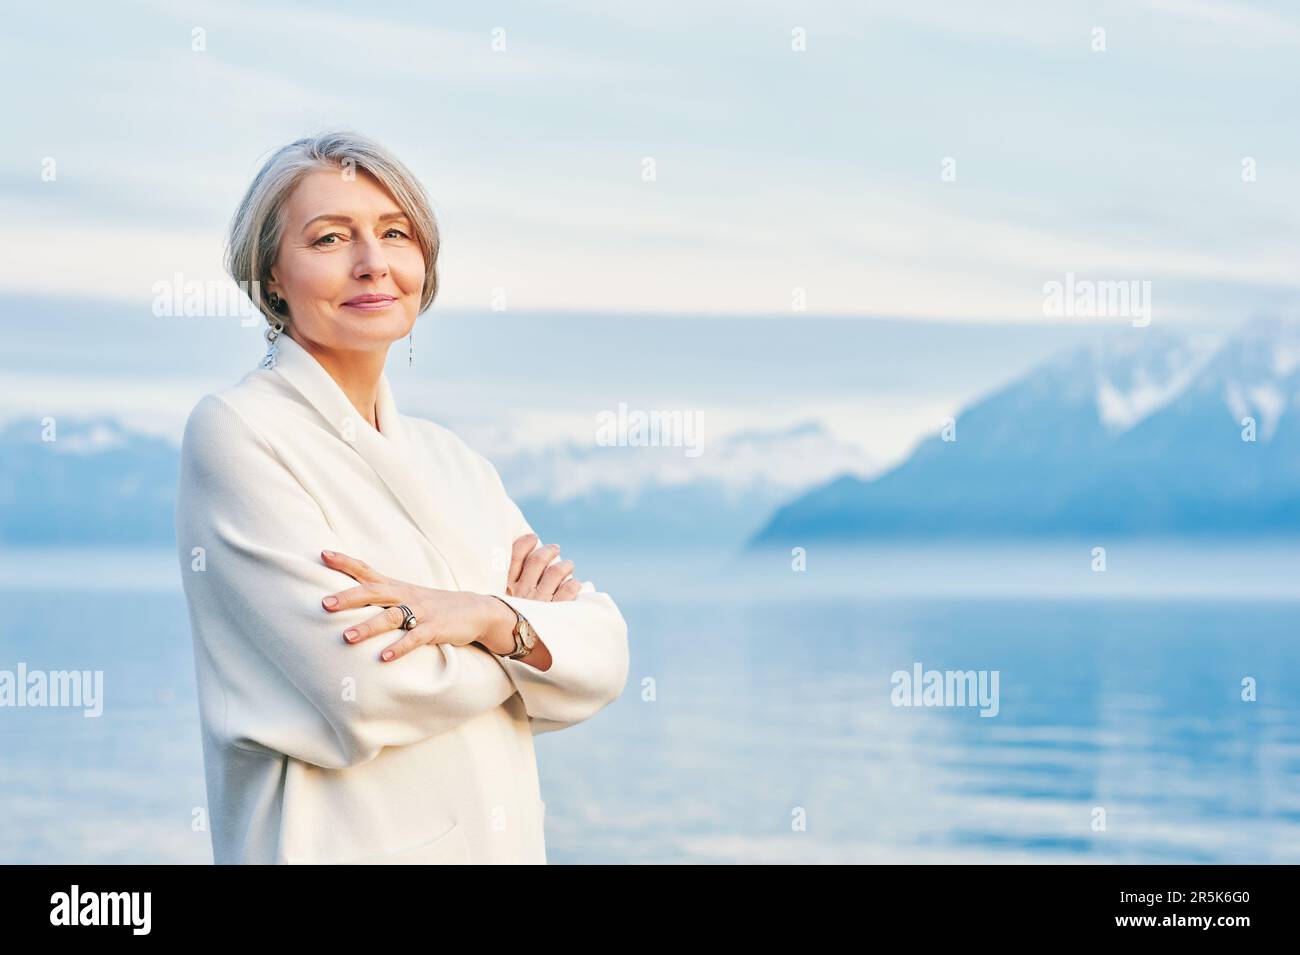 Außenporträt einer wunderschönen Frau mittleren Alters, die sich am Wintersee posiert und einen weißen Mantel trägt Stockfoto